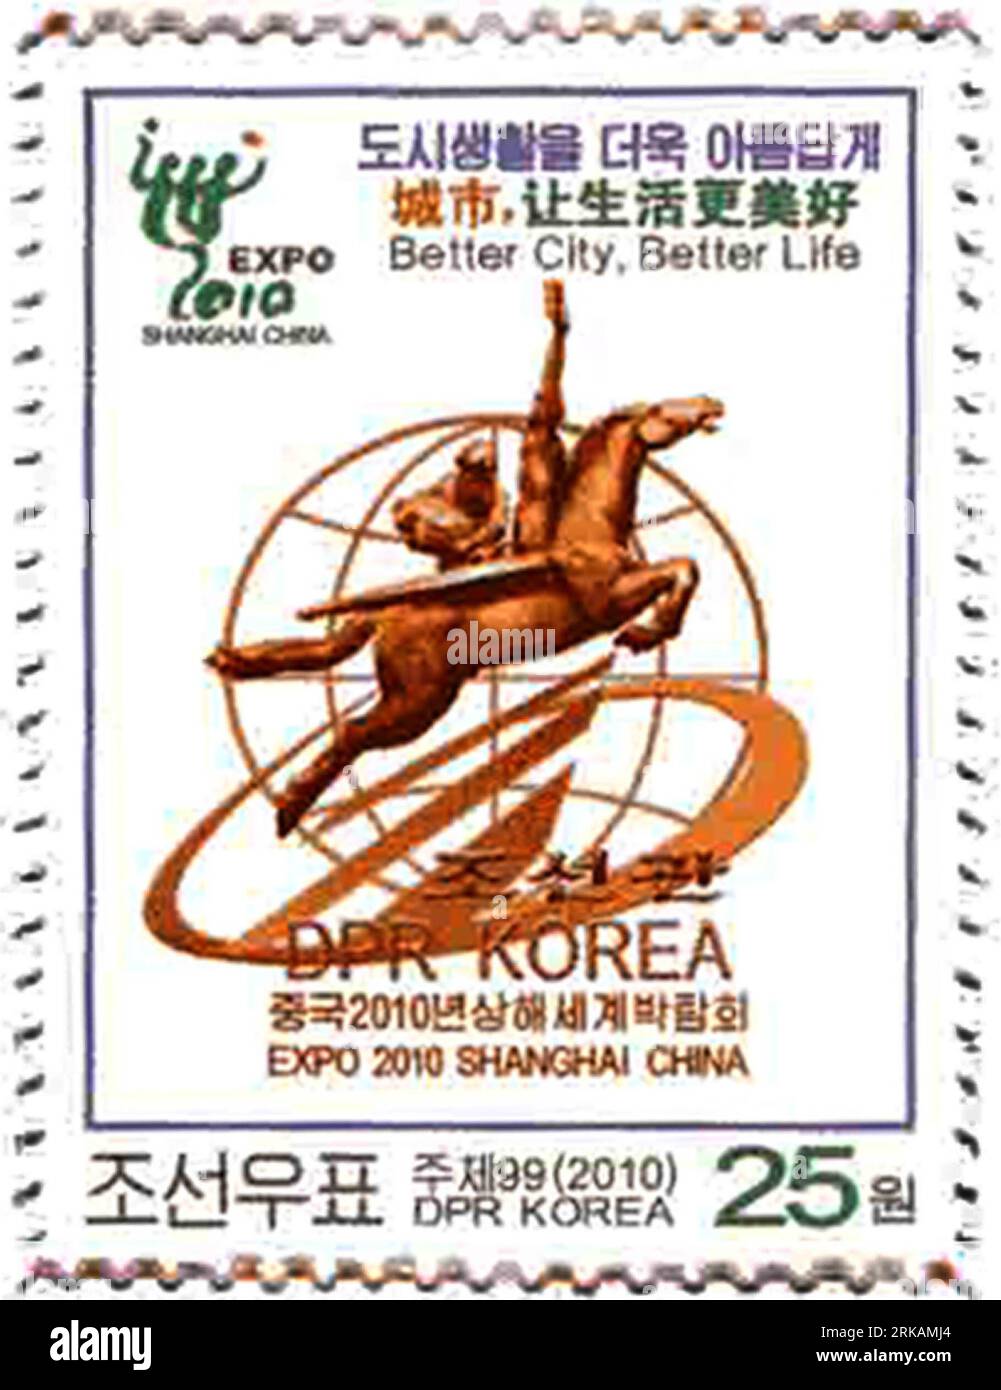 Bildnummer : 54402119 Datum : 04.09.2010 Copyright : imago/Xinhua (100904) -- PYONGYANG, 4 septembre 2010 (Xinhua) -- la photo prise et diffusée le 4 septembre 2010 par l'Agence centrale de presse coréenne montre un nouveau timbre-poste émis par le Bureau national des timbres de la République populaire démocratique de Corée (RPDC) pour marquer le jour du pavillon national de la RPDC à l'exposition de Shanghai 2010. L'Expo de Shanghai est la première exposition mondiale à laquelle la RPDC ait jamais participé. (Xinhua/KCNA) (wjd) RPDC-SHANGHAI-WORLD EXPO-STAMP PUBLICATIONxNOTxINxCHN Gesellschaft Objekte Briefmarke kbdig xub 2010 hoch Bildnummer 54402119 Banque D'Images